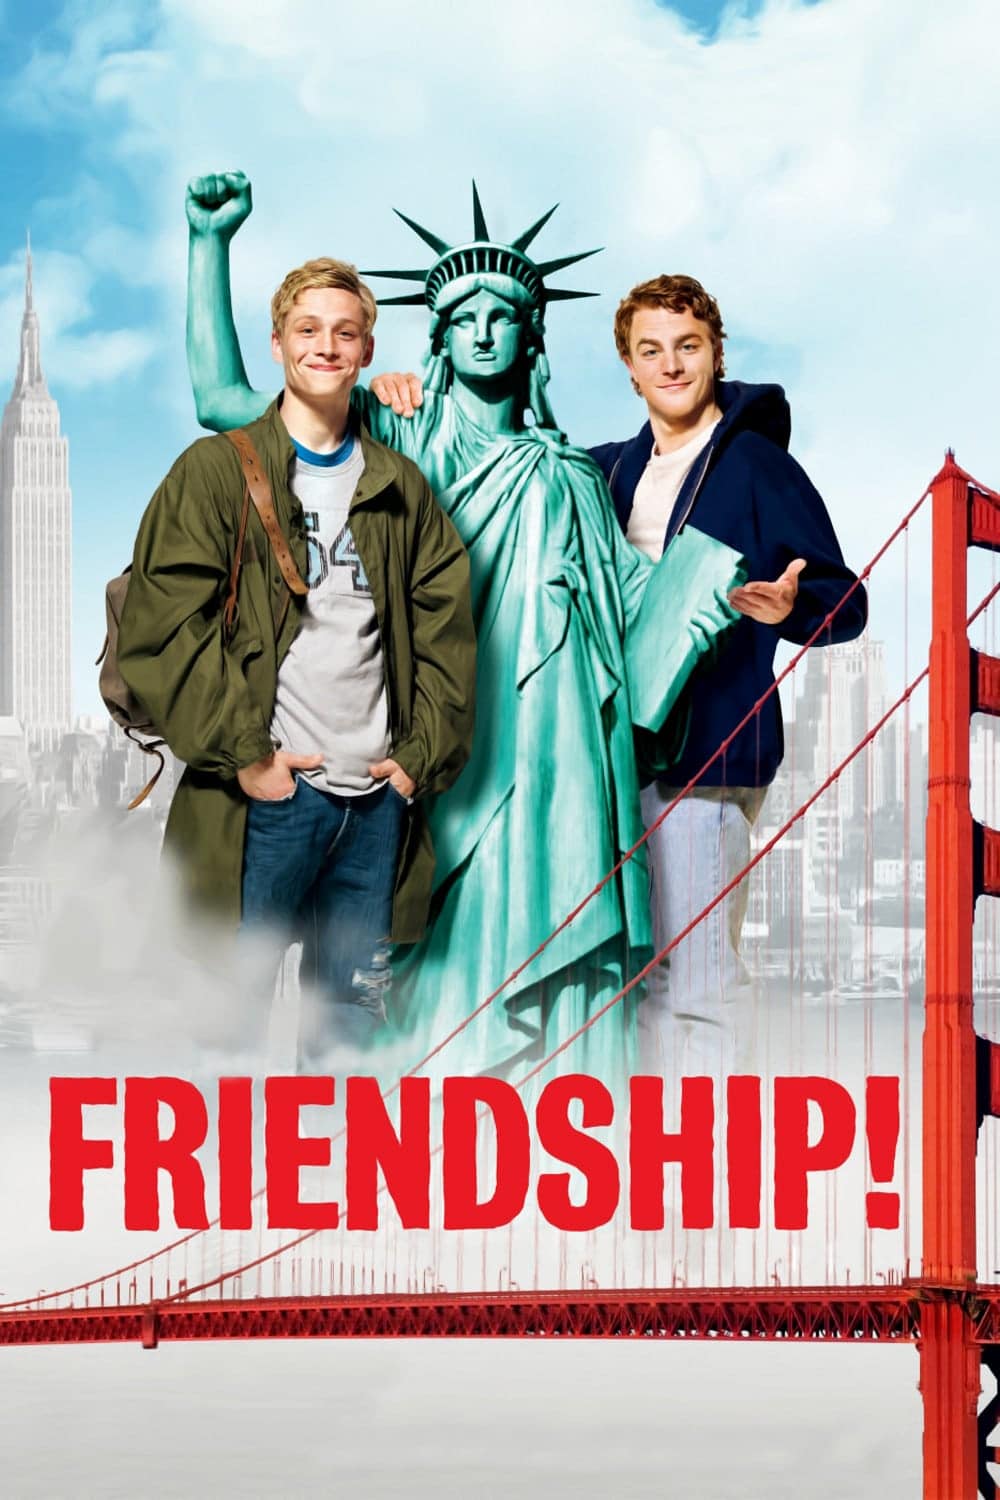 Plakat von "Friendship!"